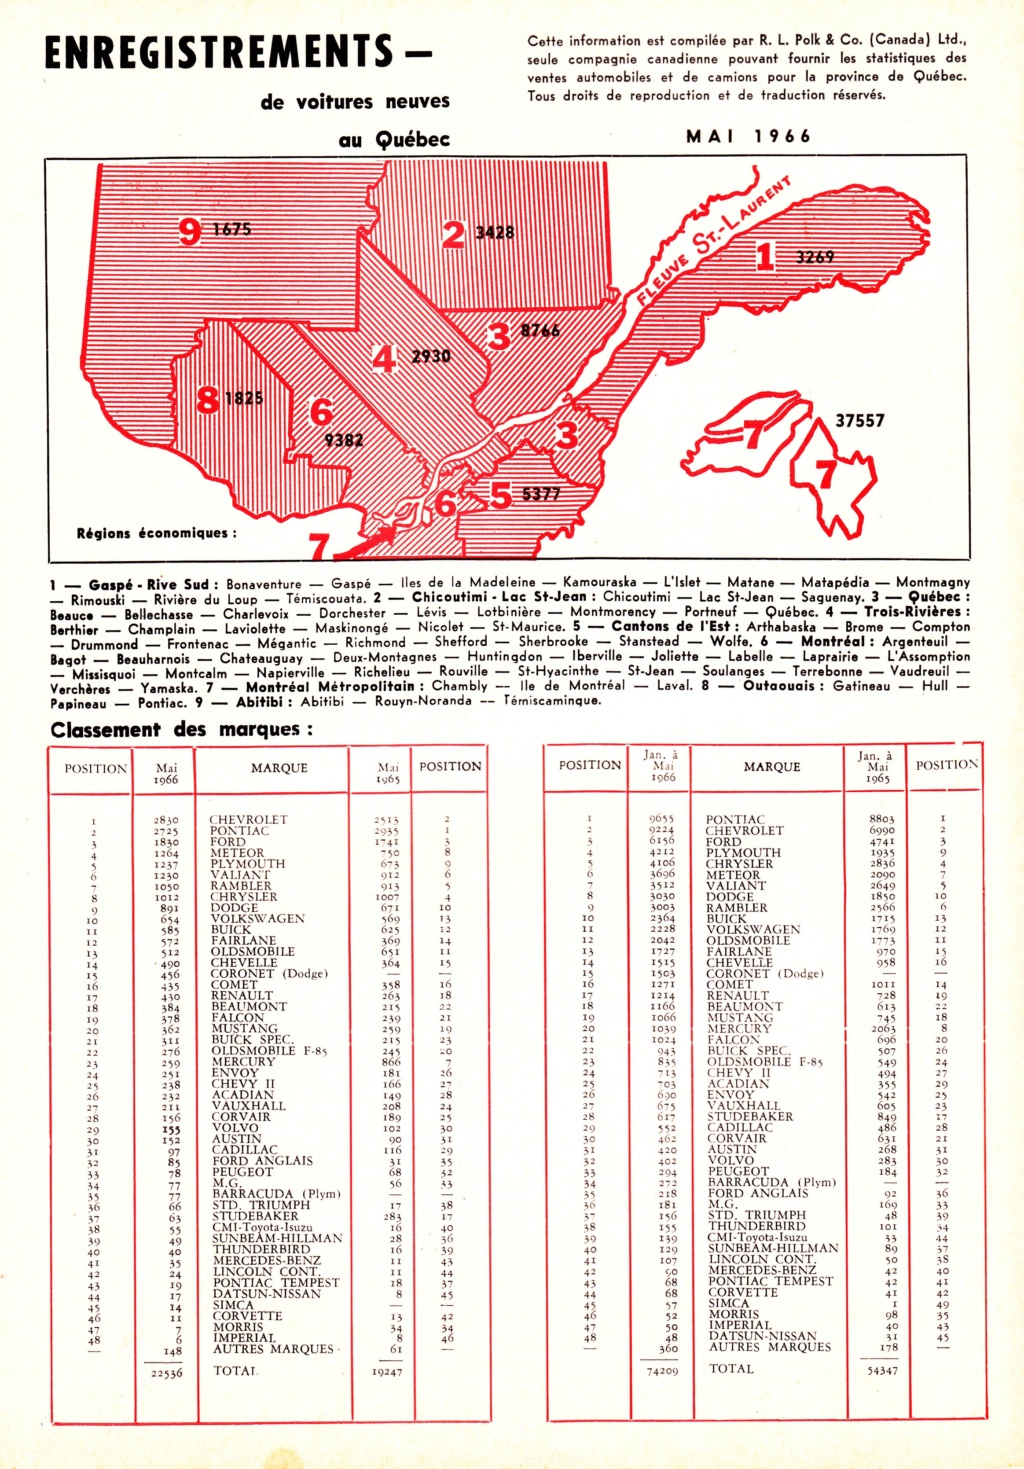 Le magazine "L'automobile" et la quantité d'auto vendu au Québec par mois en 1966 Vente_16